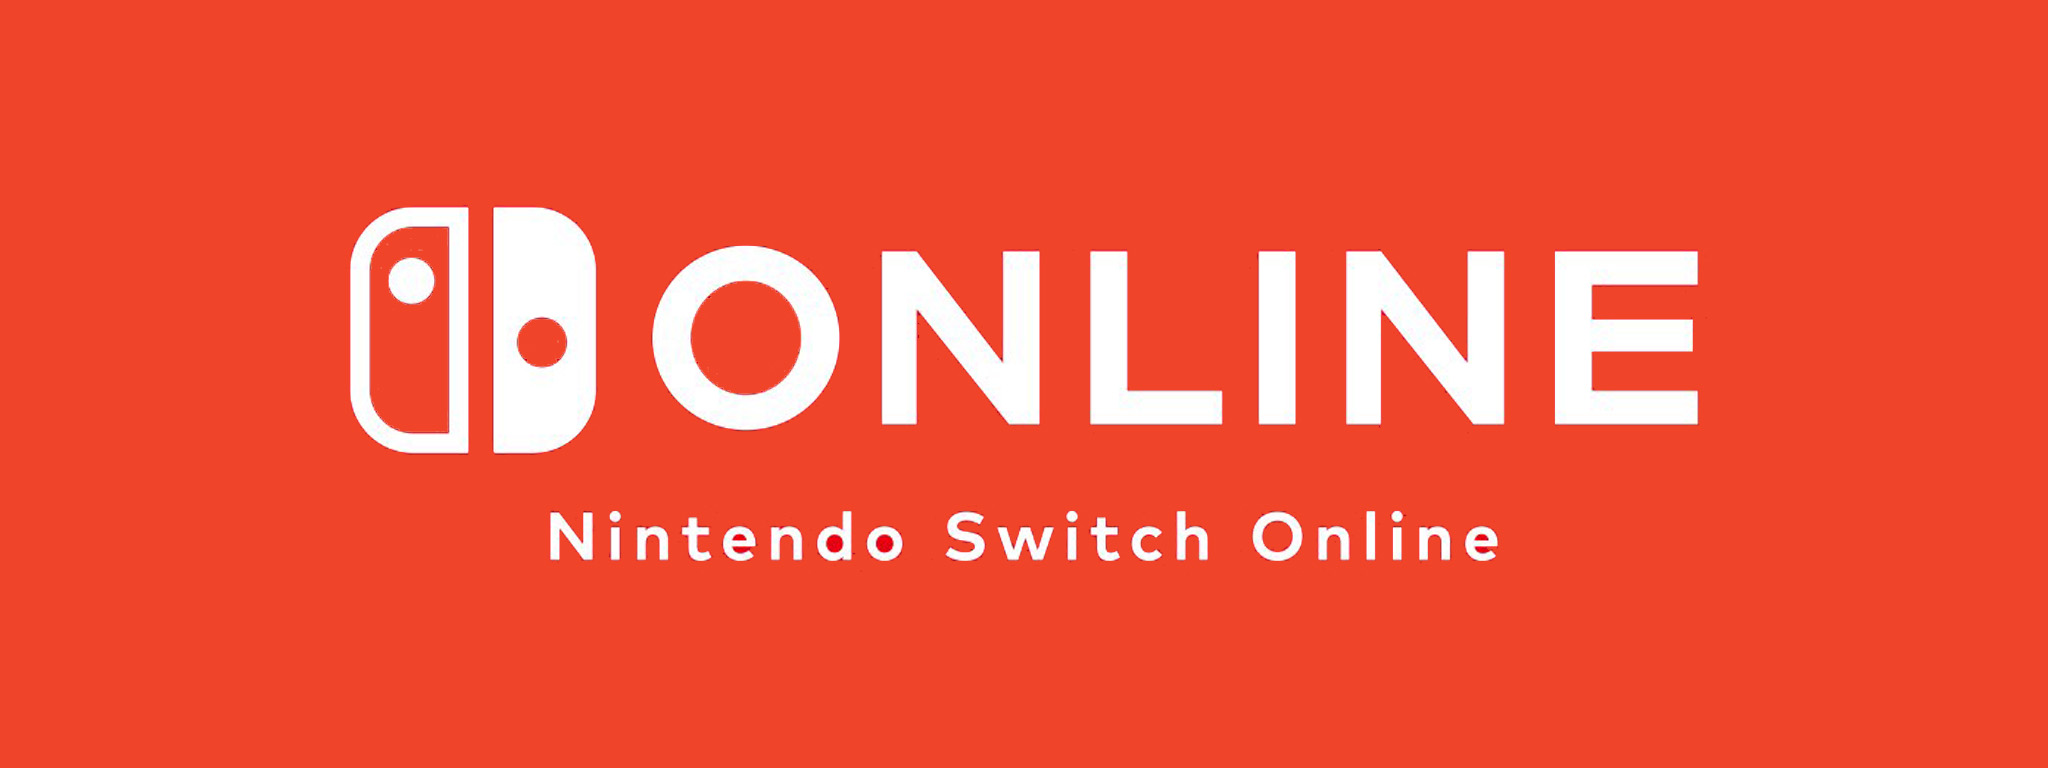 Dịch vụ chơi game online của Nintendo Switch có giá 20 USD/năm, nhiều ưu đãi, năm sau sẽ hoạt động